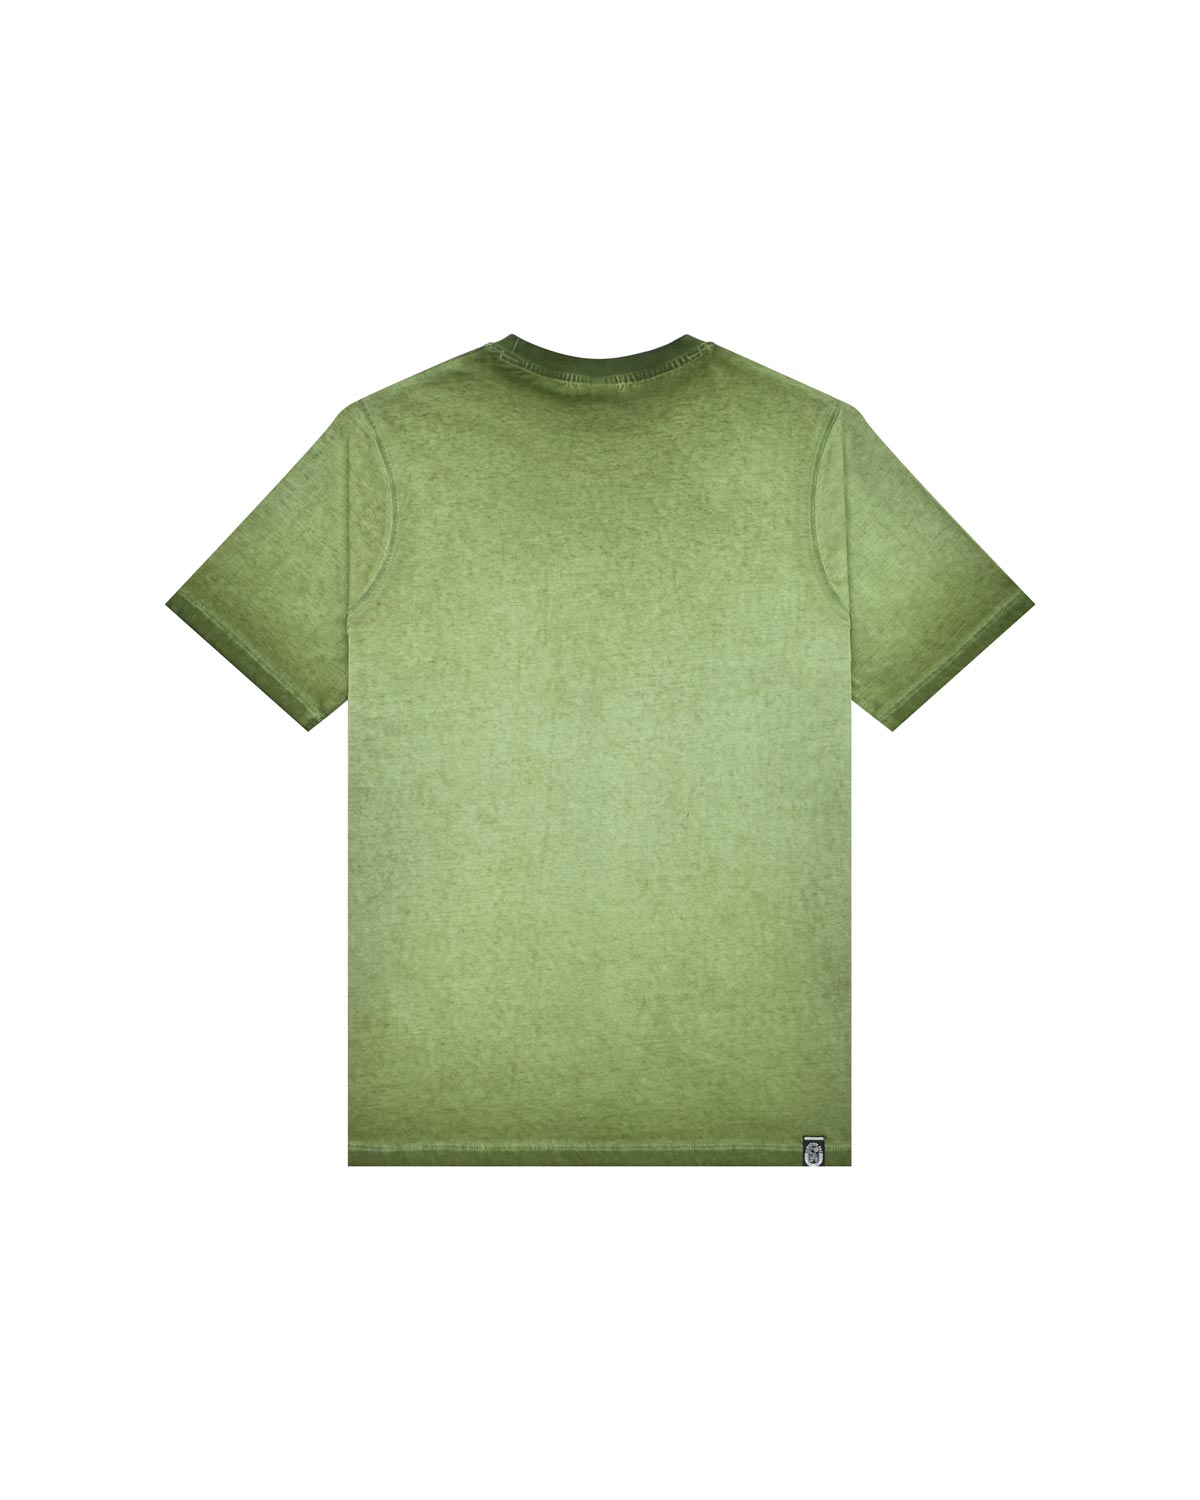 Man | Shaded Green T-Shirt With “Corazon Espinado” Print